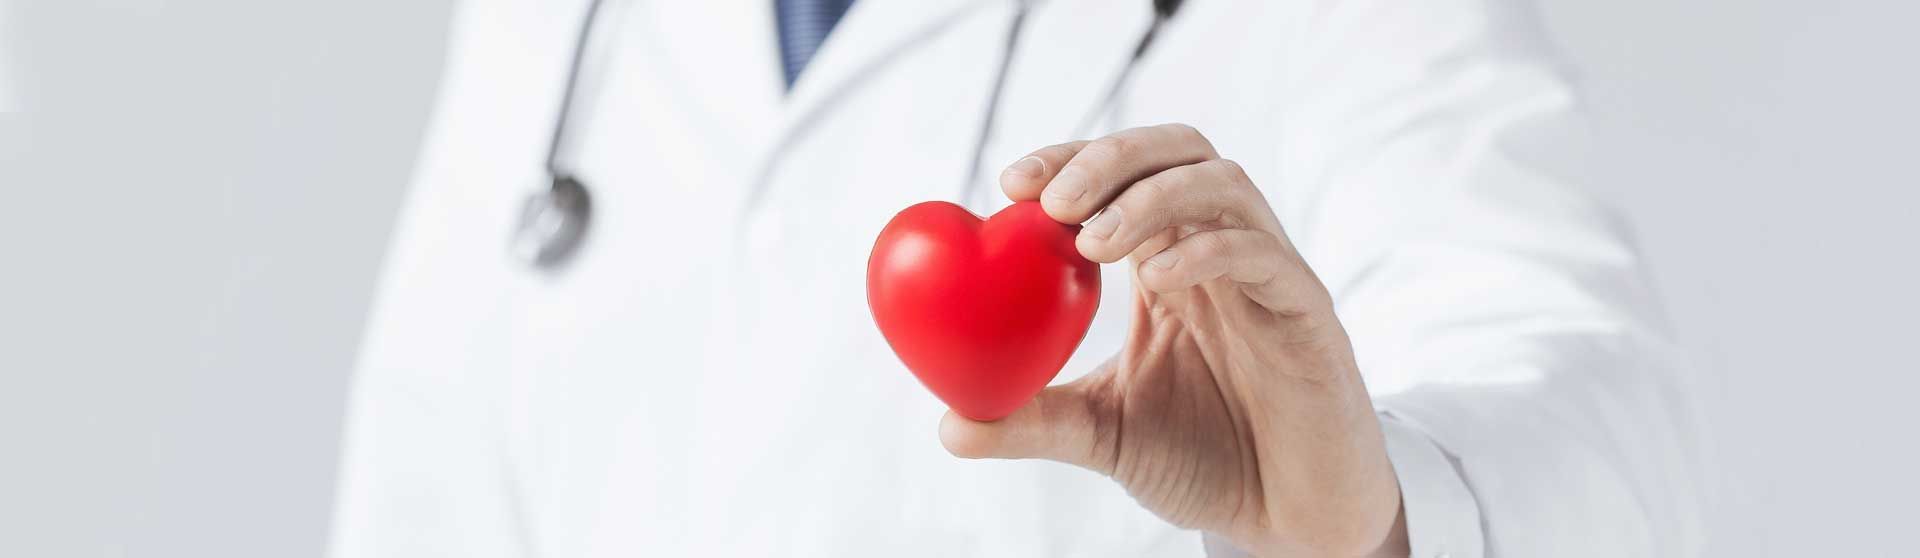 Arzt hält ein Herz-Modell in der Hand.